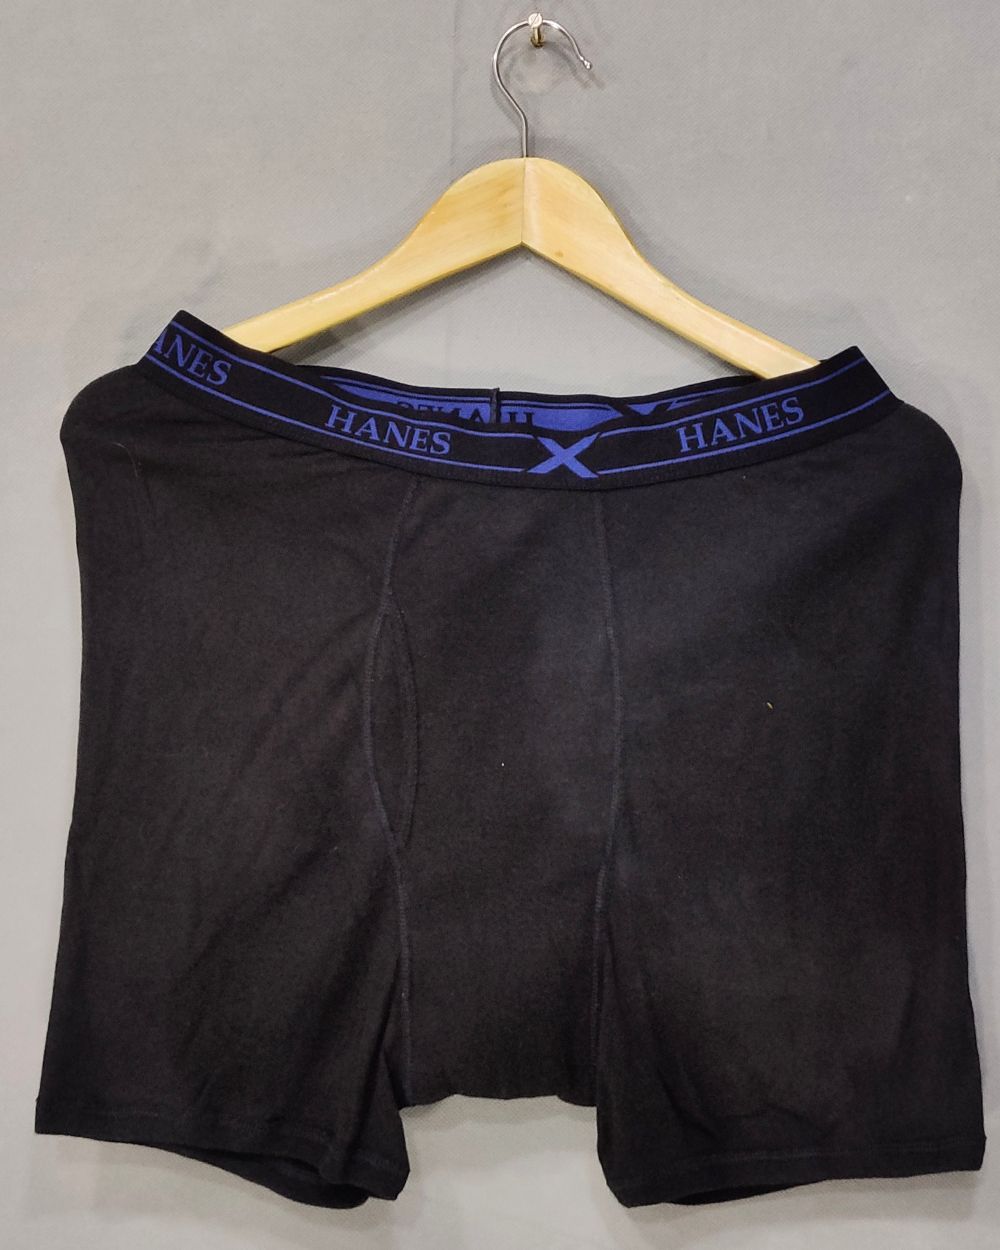 Hanes Original Branded Boxer Underwear For Men